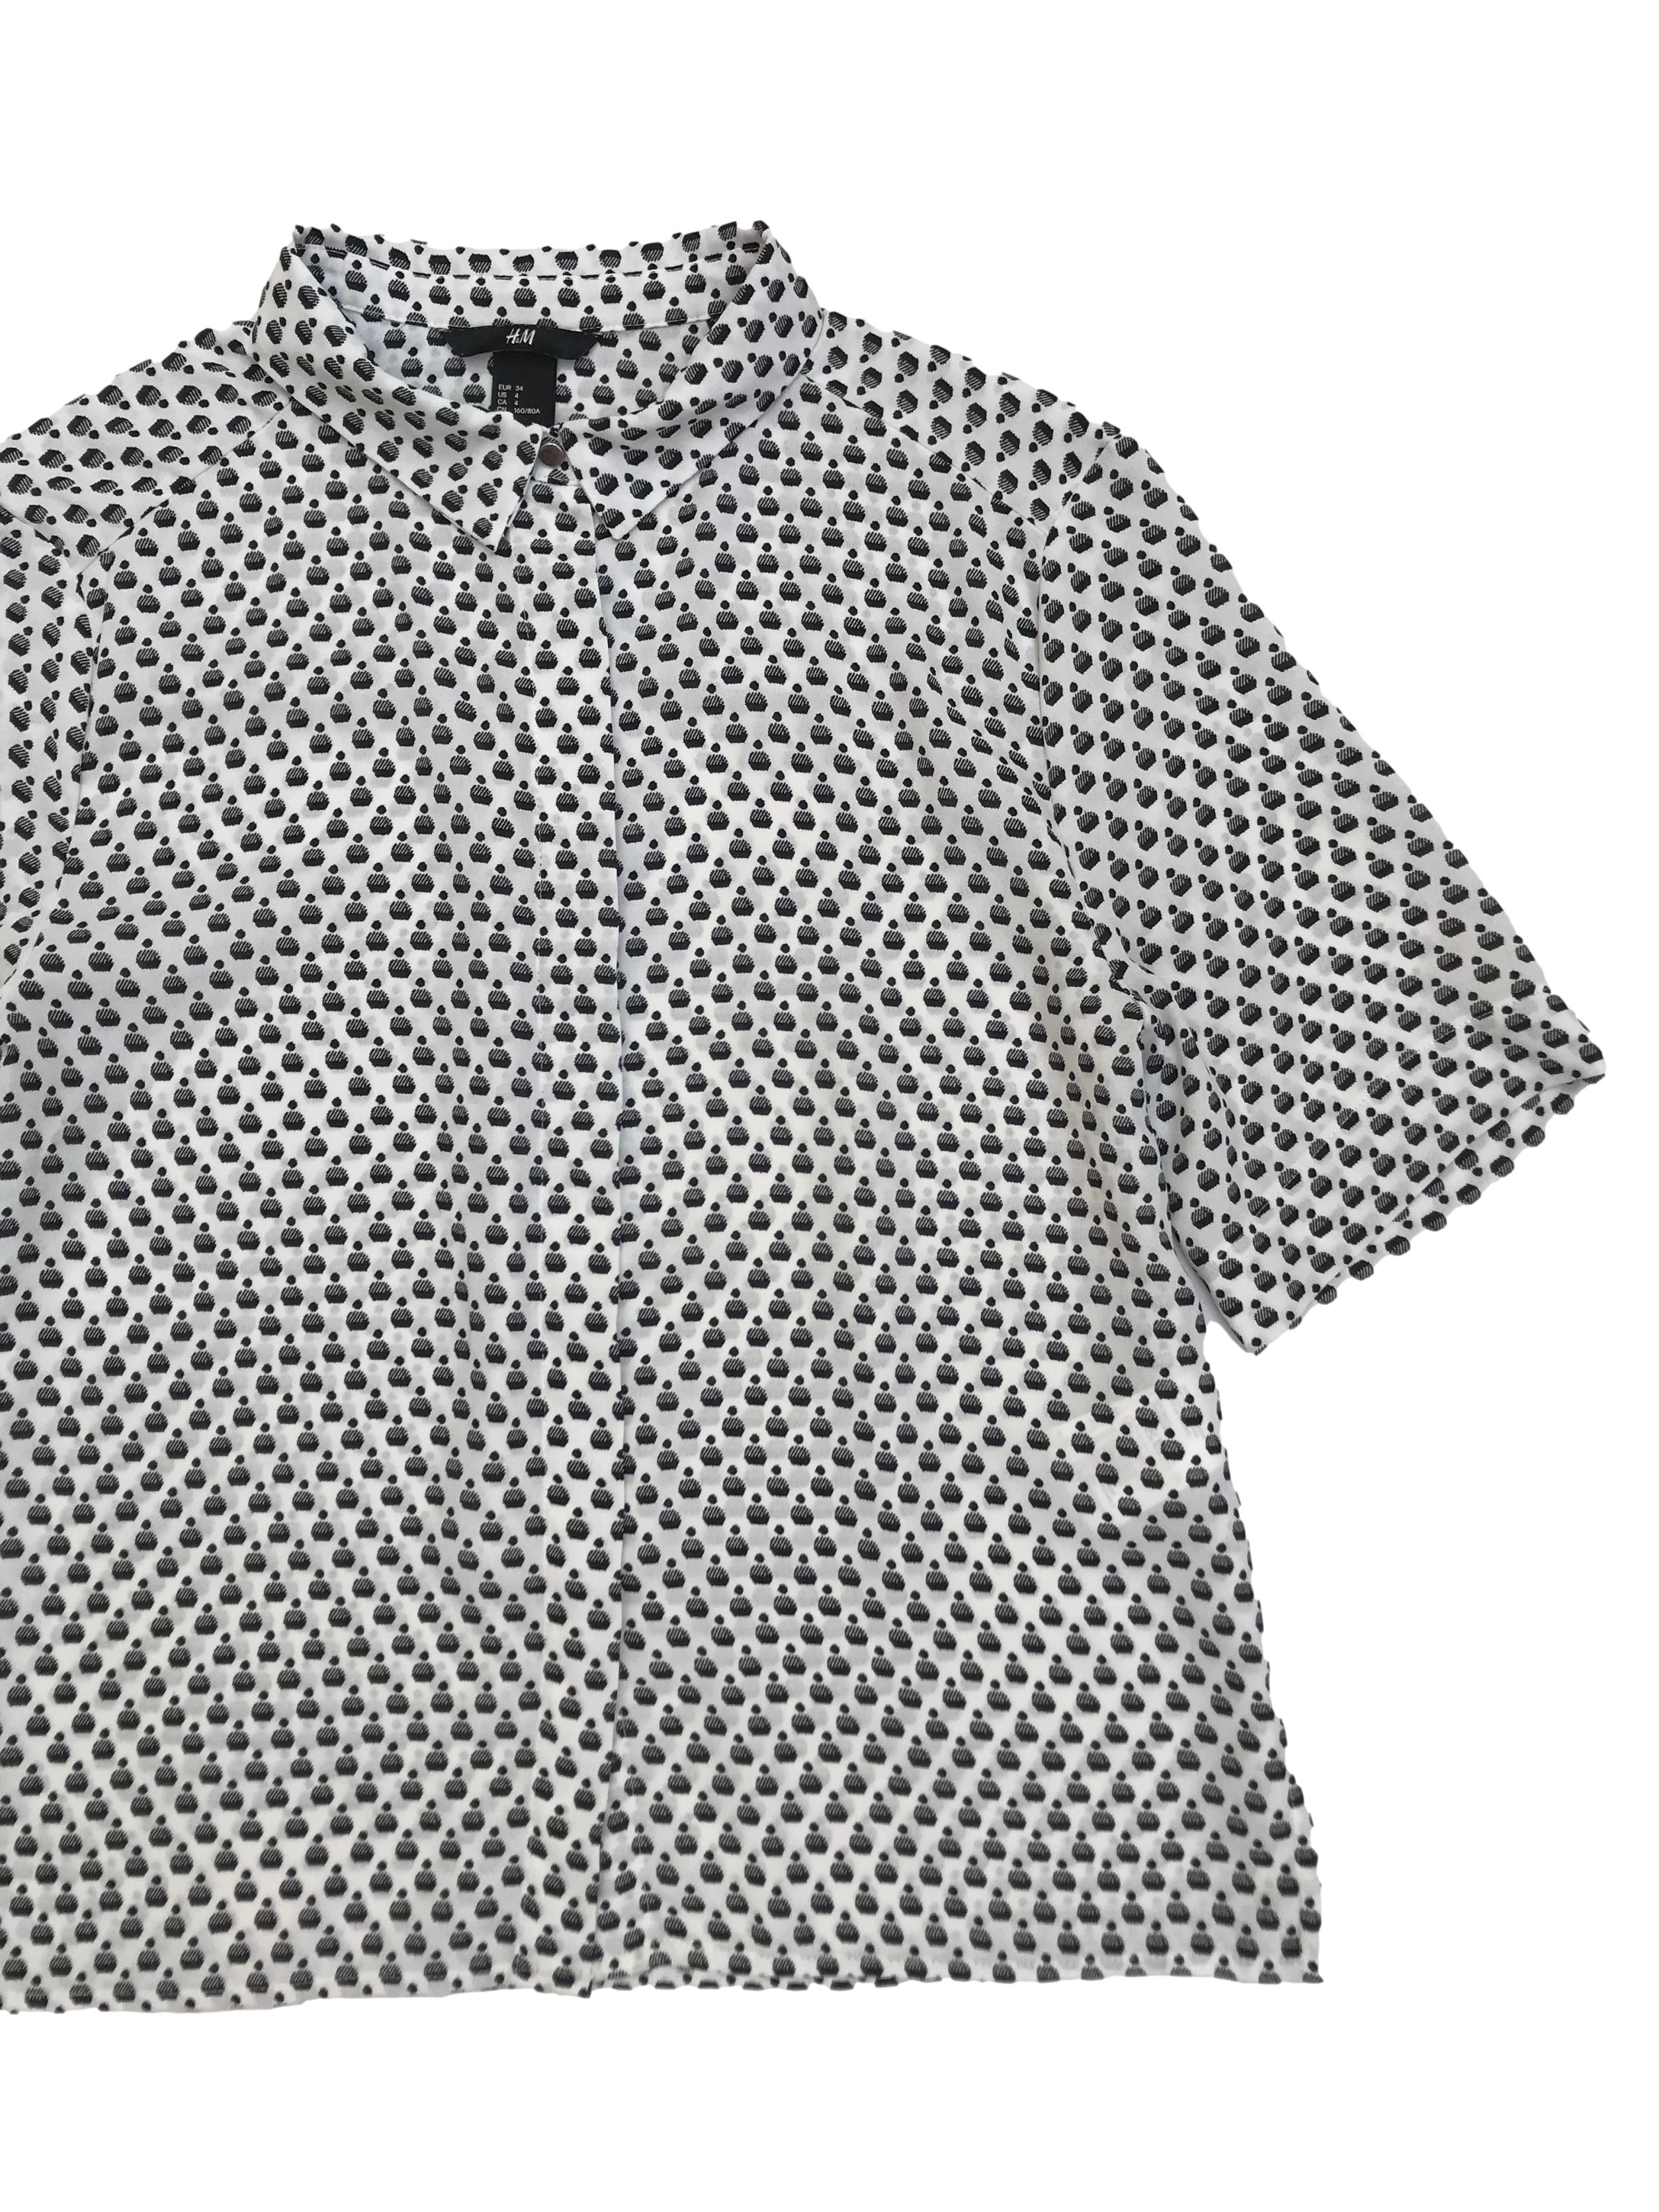 Blusa H&M tipo gasa blanca con print negro, corte oversize, camisera con canesú en la espalda. Largo 53cm